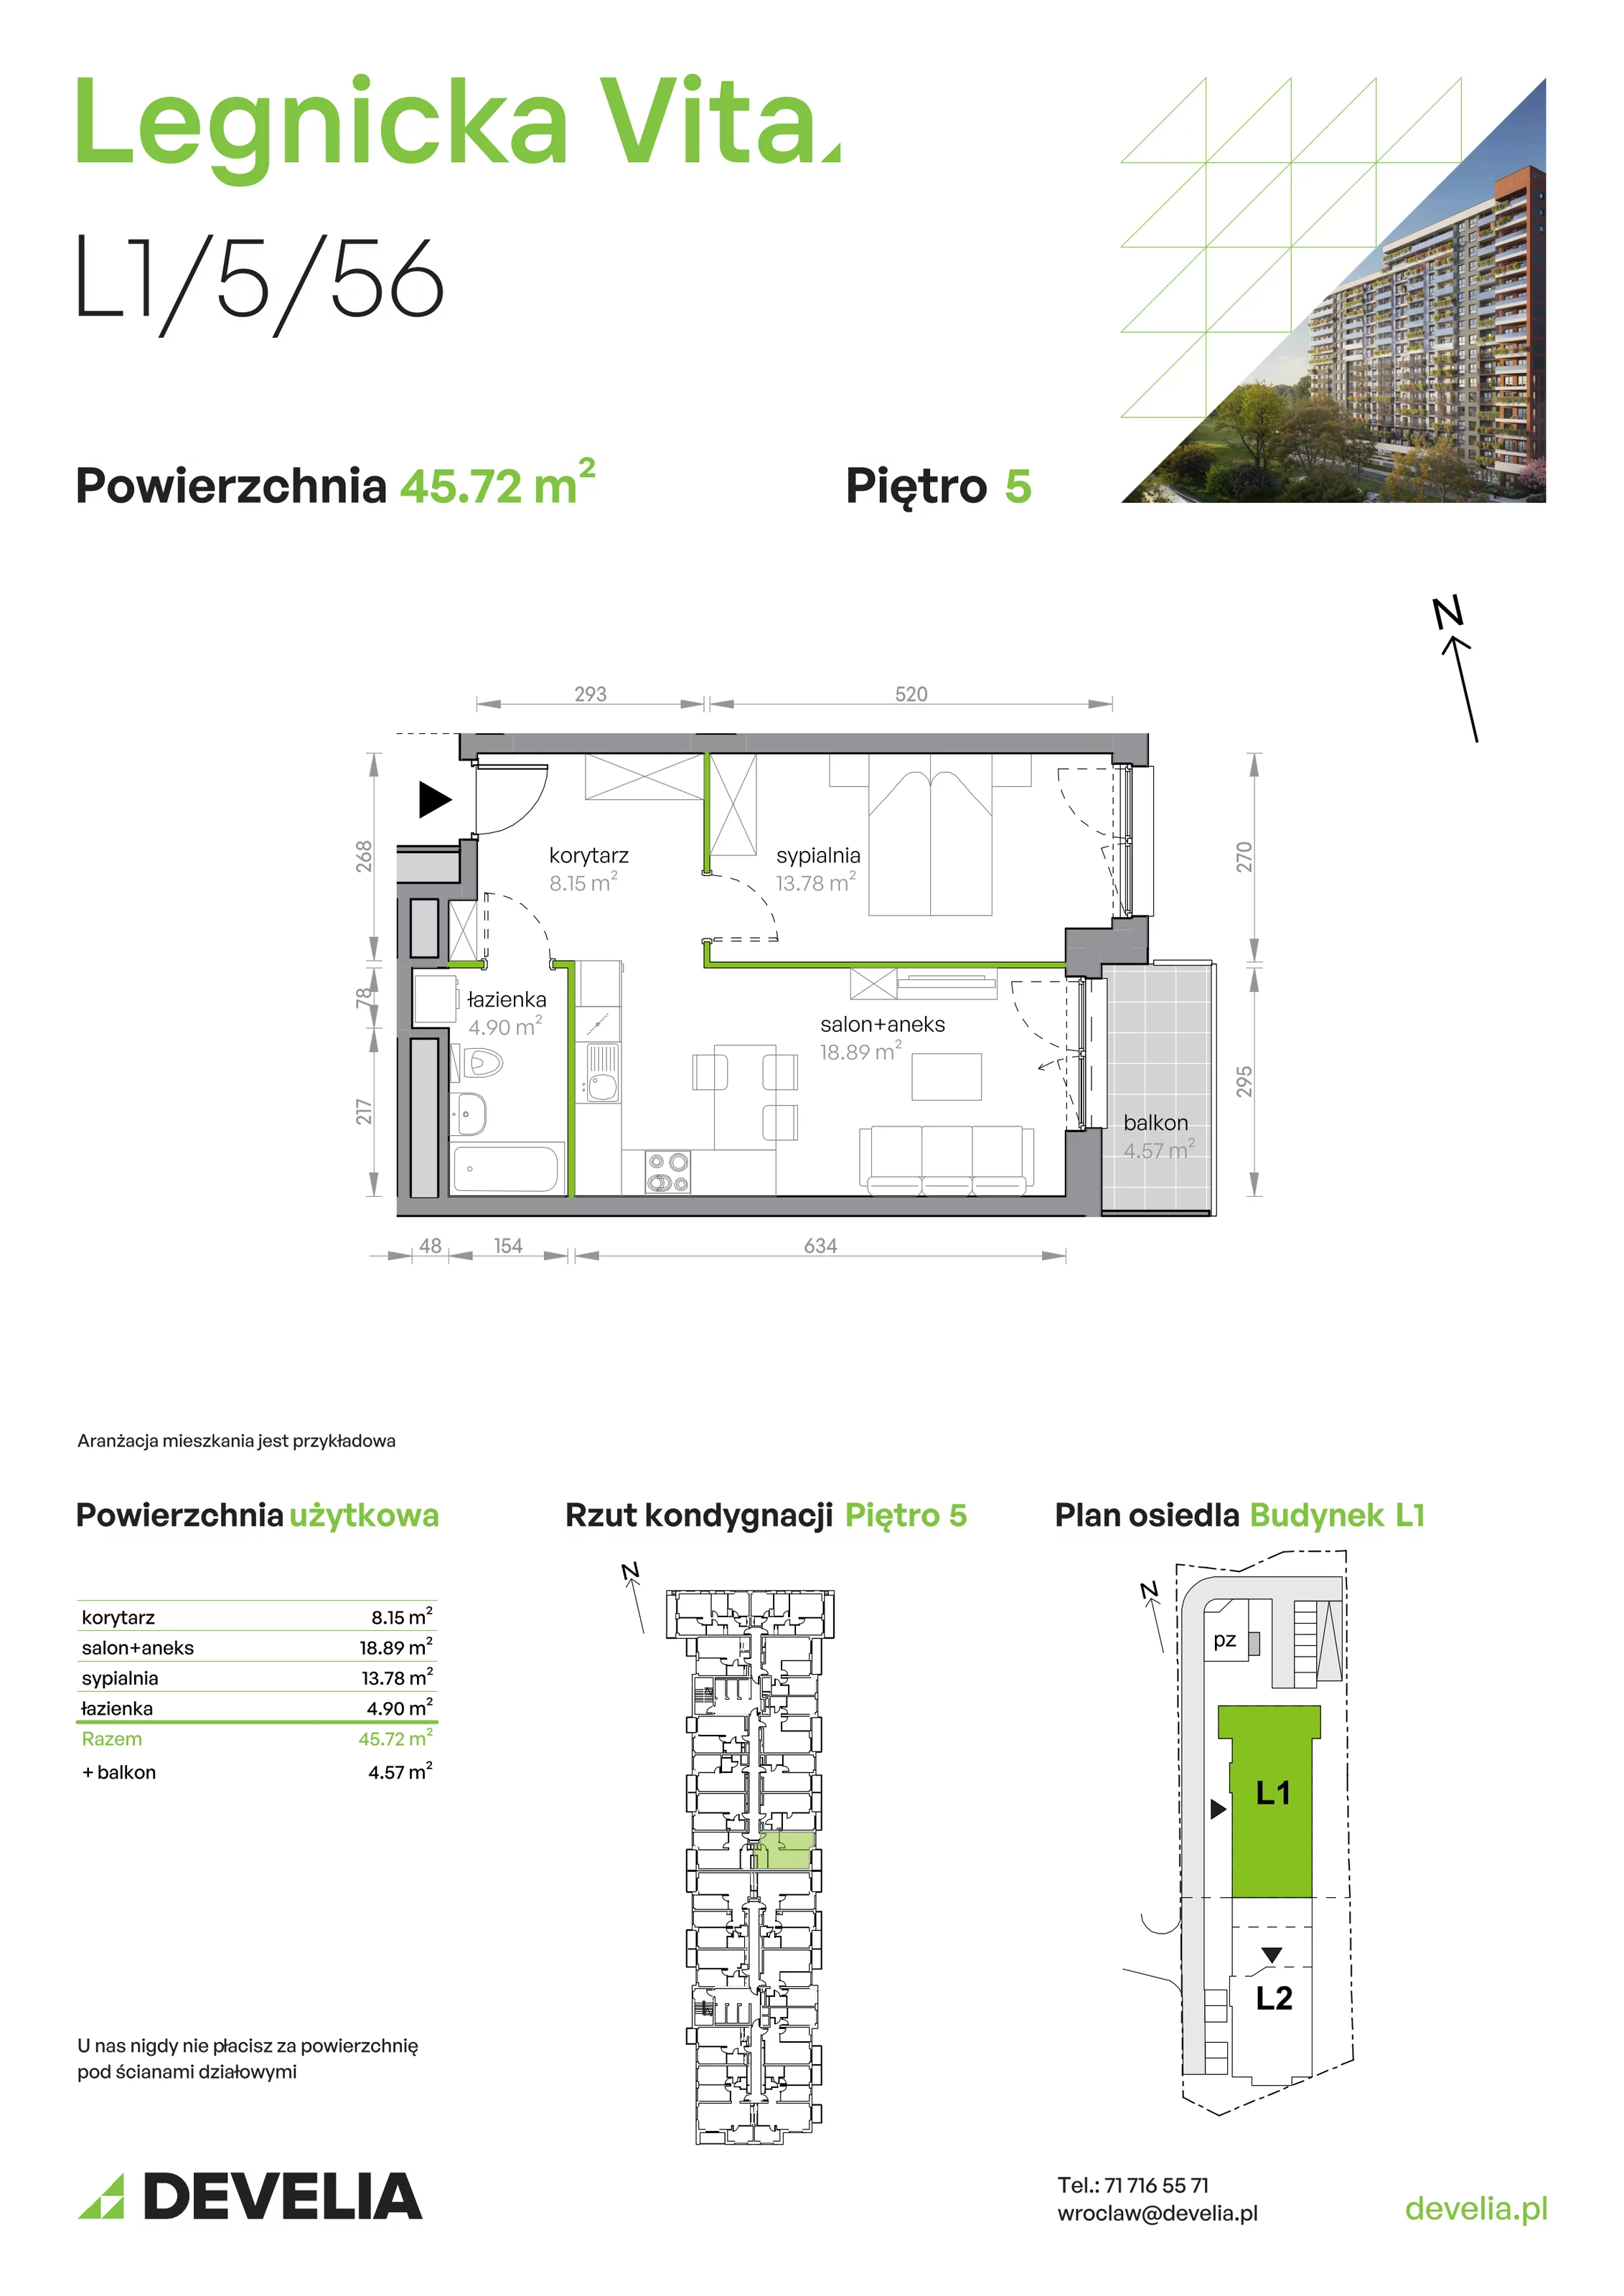 Mieszkanie 45,72 m², piętro 5, oferta nr L1/5/56, Legnicka Vita, Wrocław, Gądów-Popowice Południowe, Popowice, ul. Legnicka 52 A